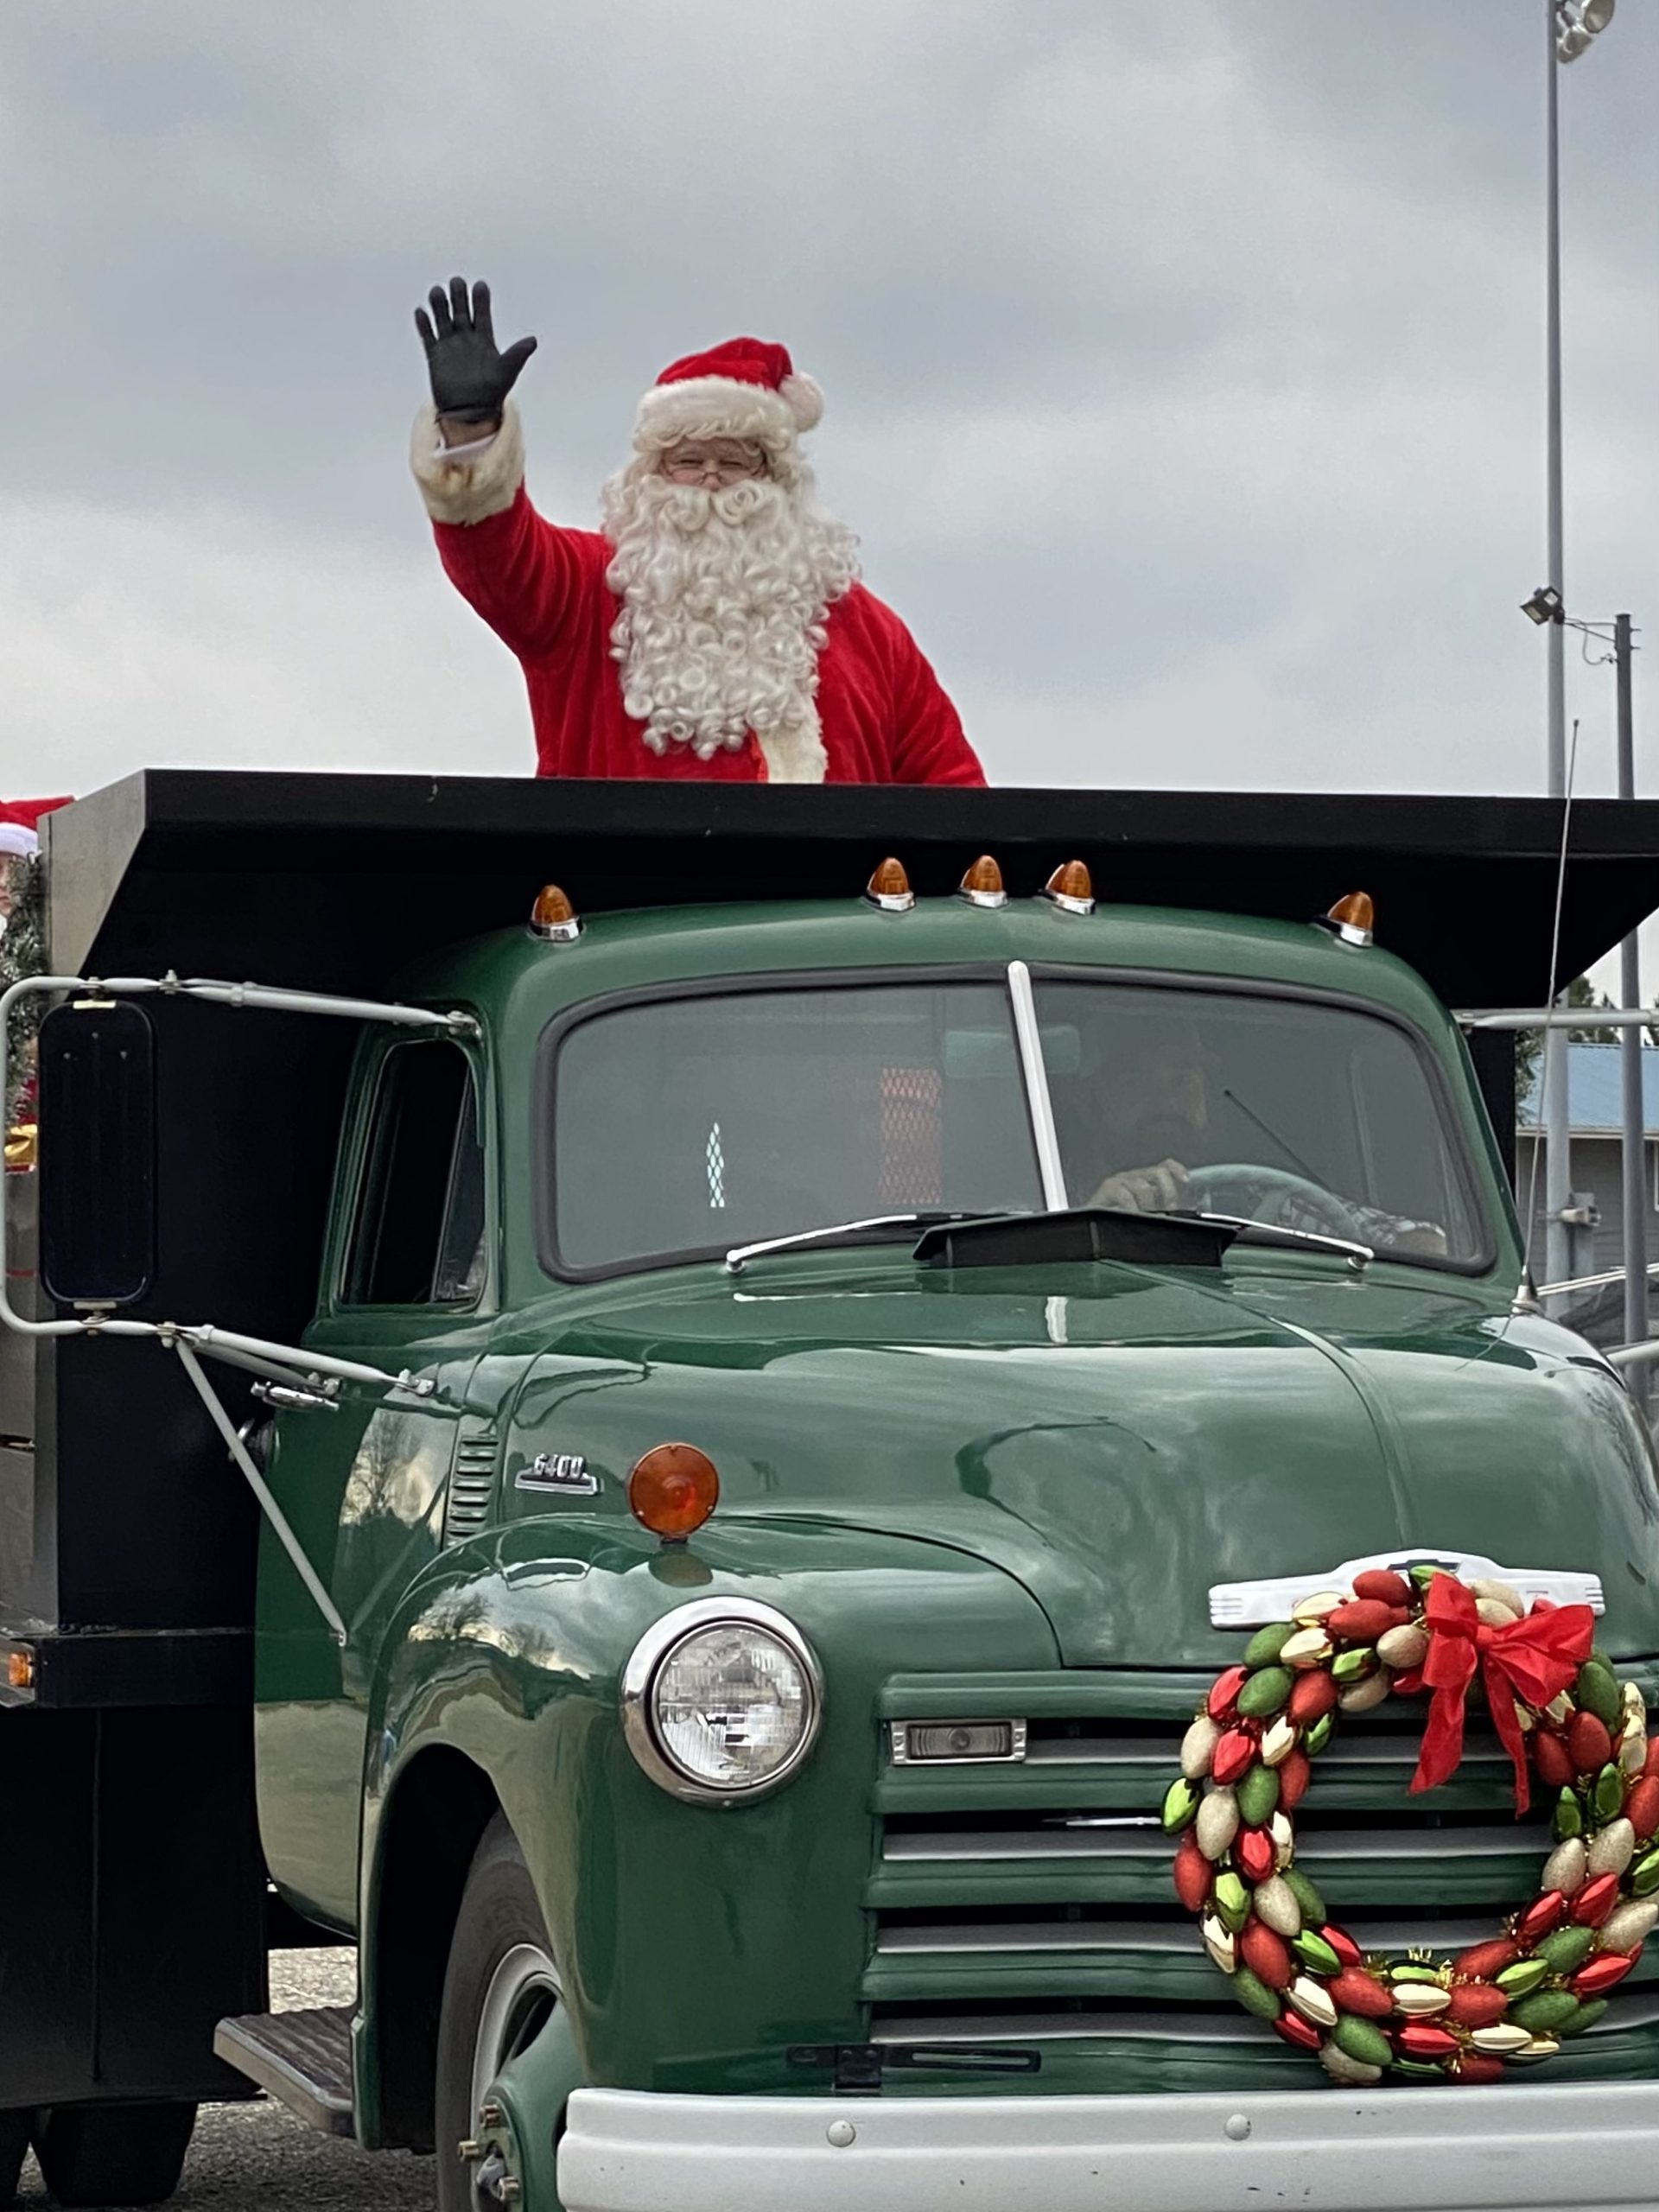 Santa made his appearance at the Clayton Christmas Parade 2021